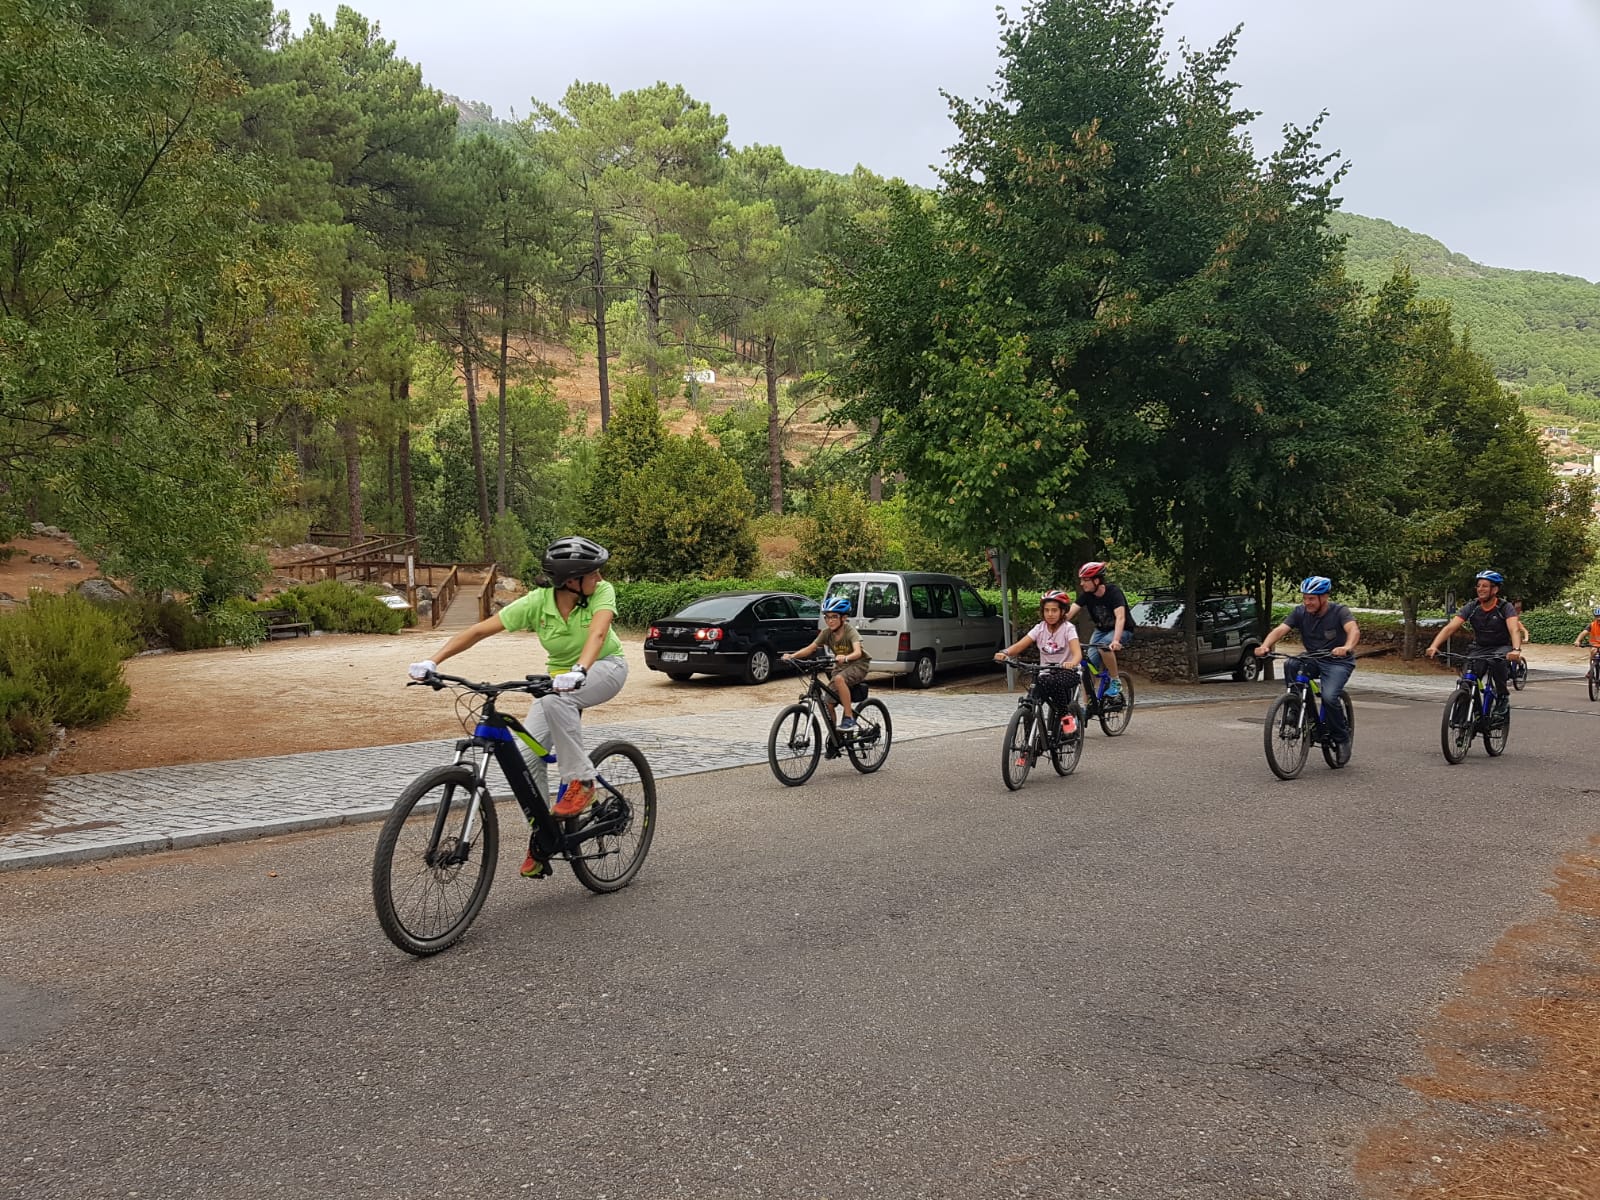 El Parque Natural Las Batuecas Sierra de Francia pone a disposición de los visitantes 10 bicicletas y un coche eléctrico gratuitos para conocer el espacio